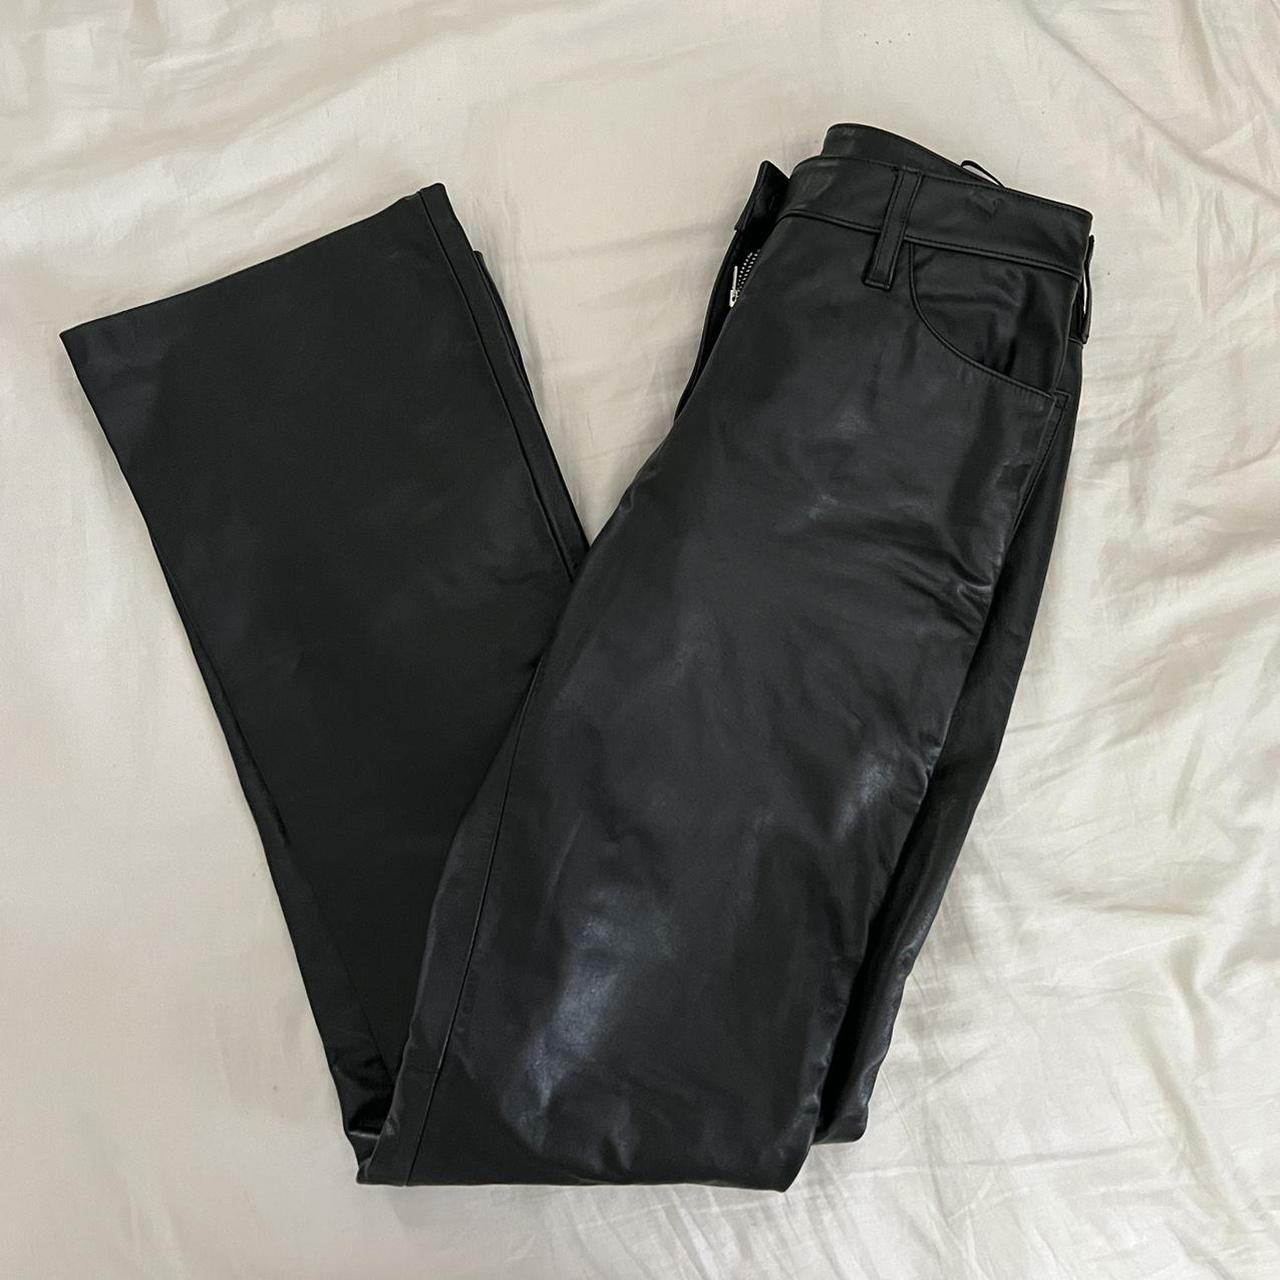 Vintage Genuine Leather Black Straight Leg Mid Rise Pants - Medium